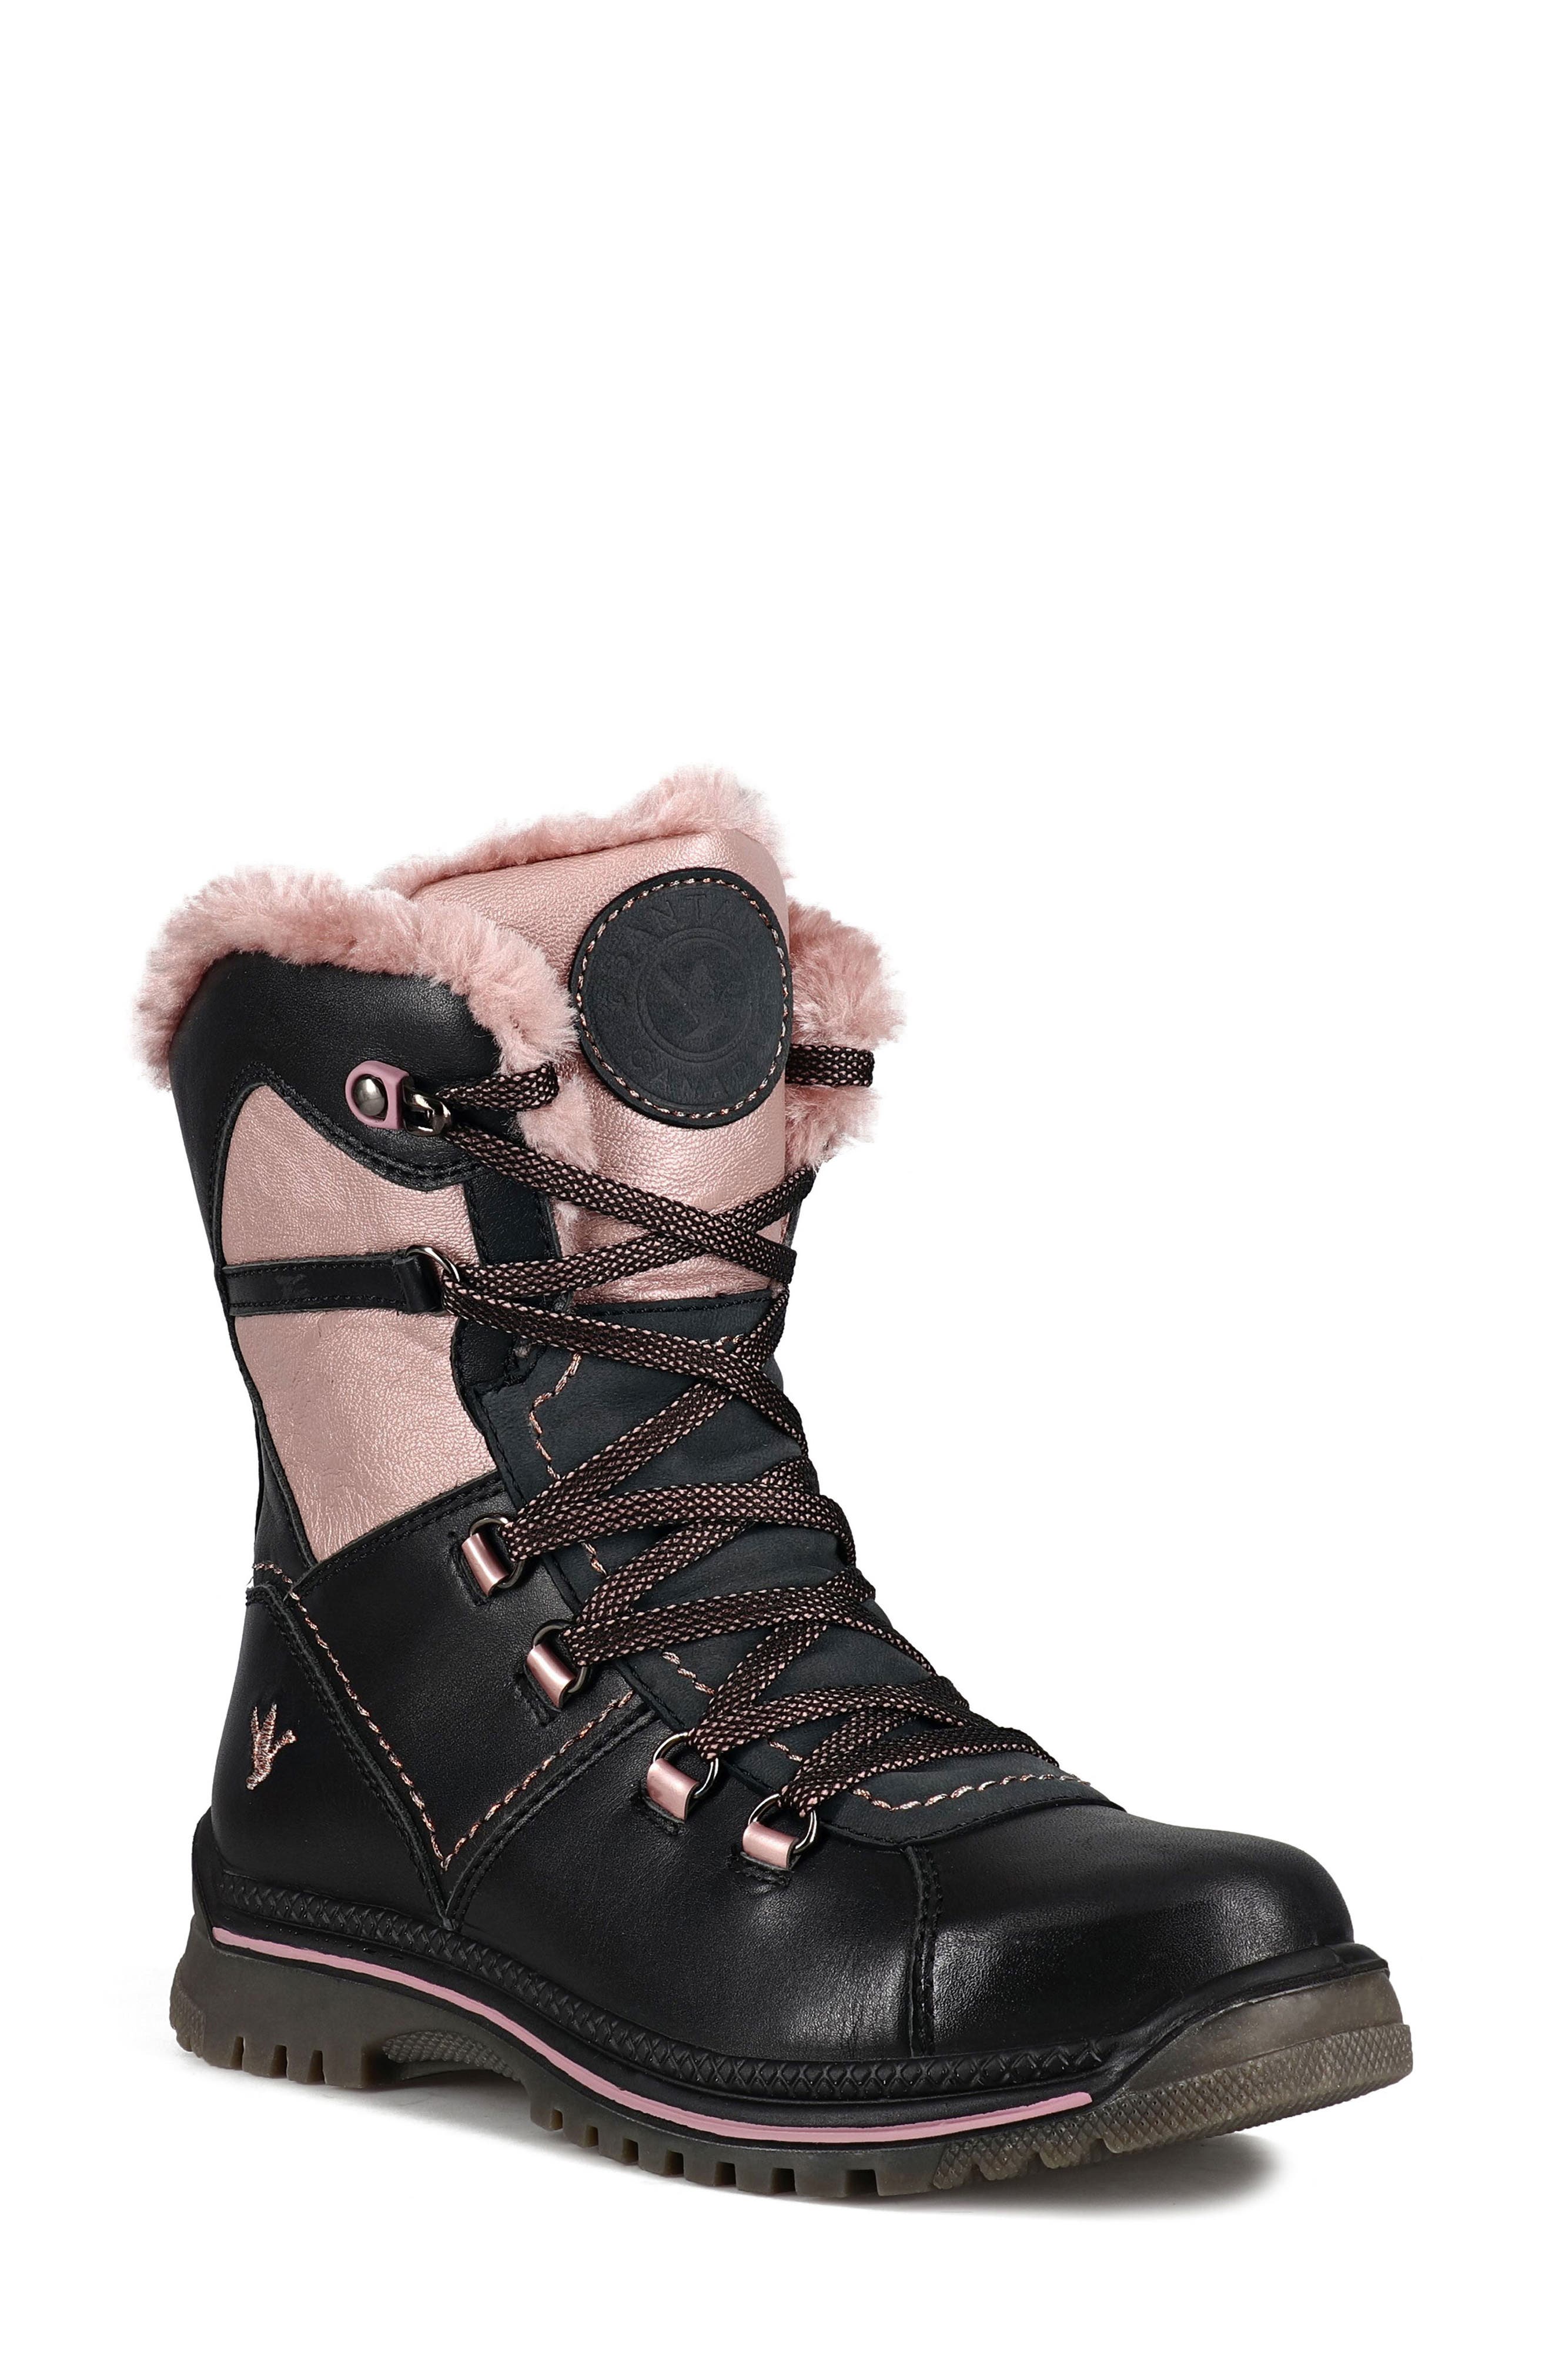 Brand New Santana Canada Mackenzie Winter Boot & Wandelschoenen Schoenen damesschoenen Laarzen Berg Dames Maat 7 